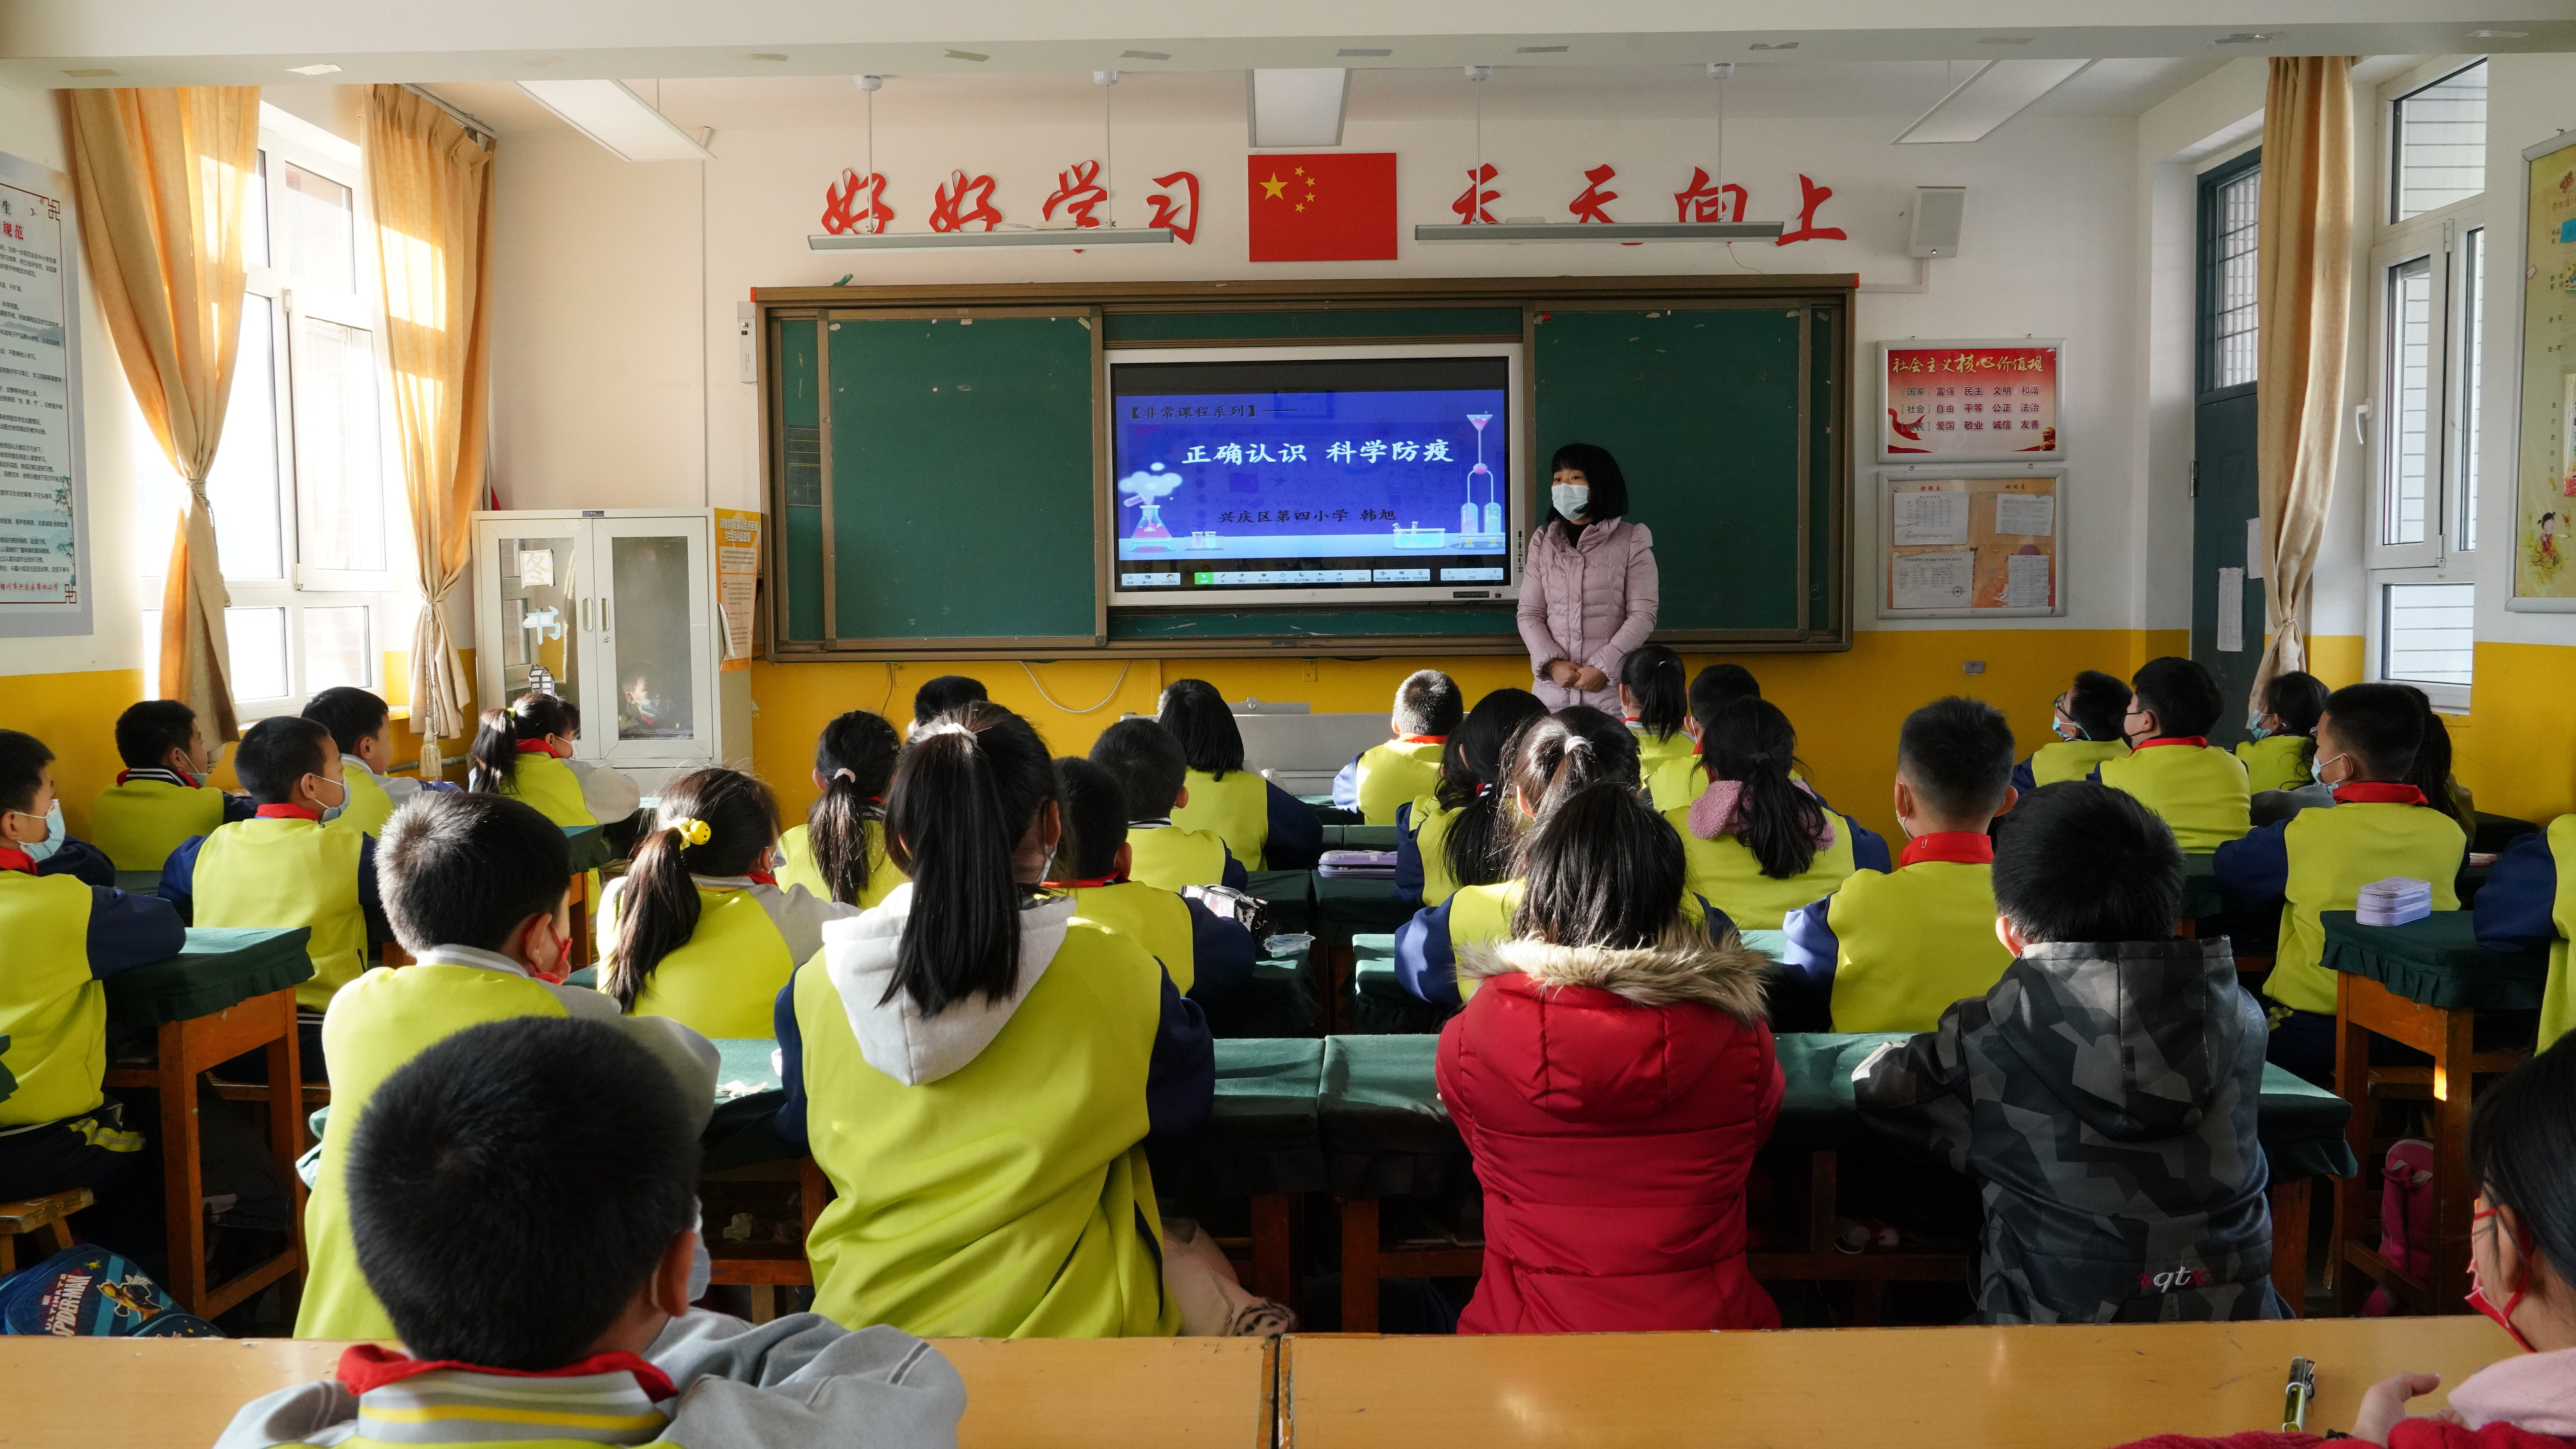 寒假将至,兴庆区教育系统疫情防控早部署